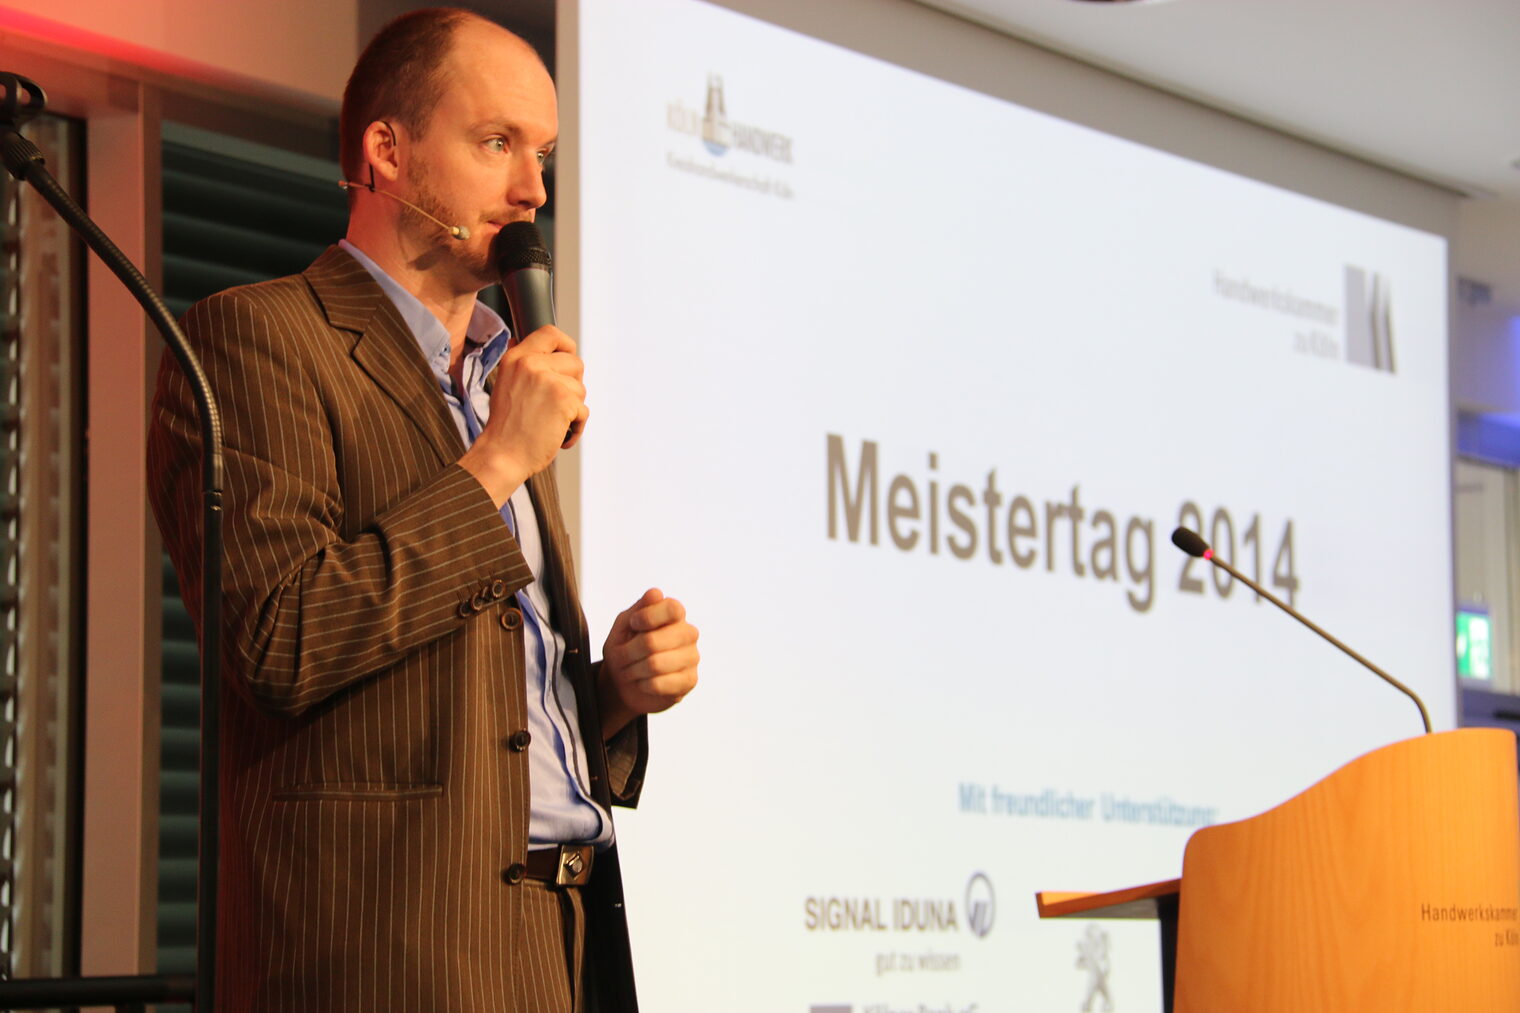 Meistertag 2014 30